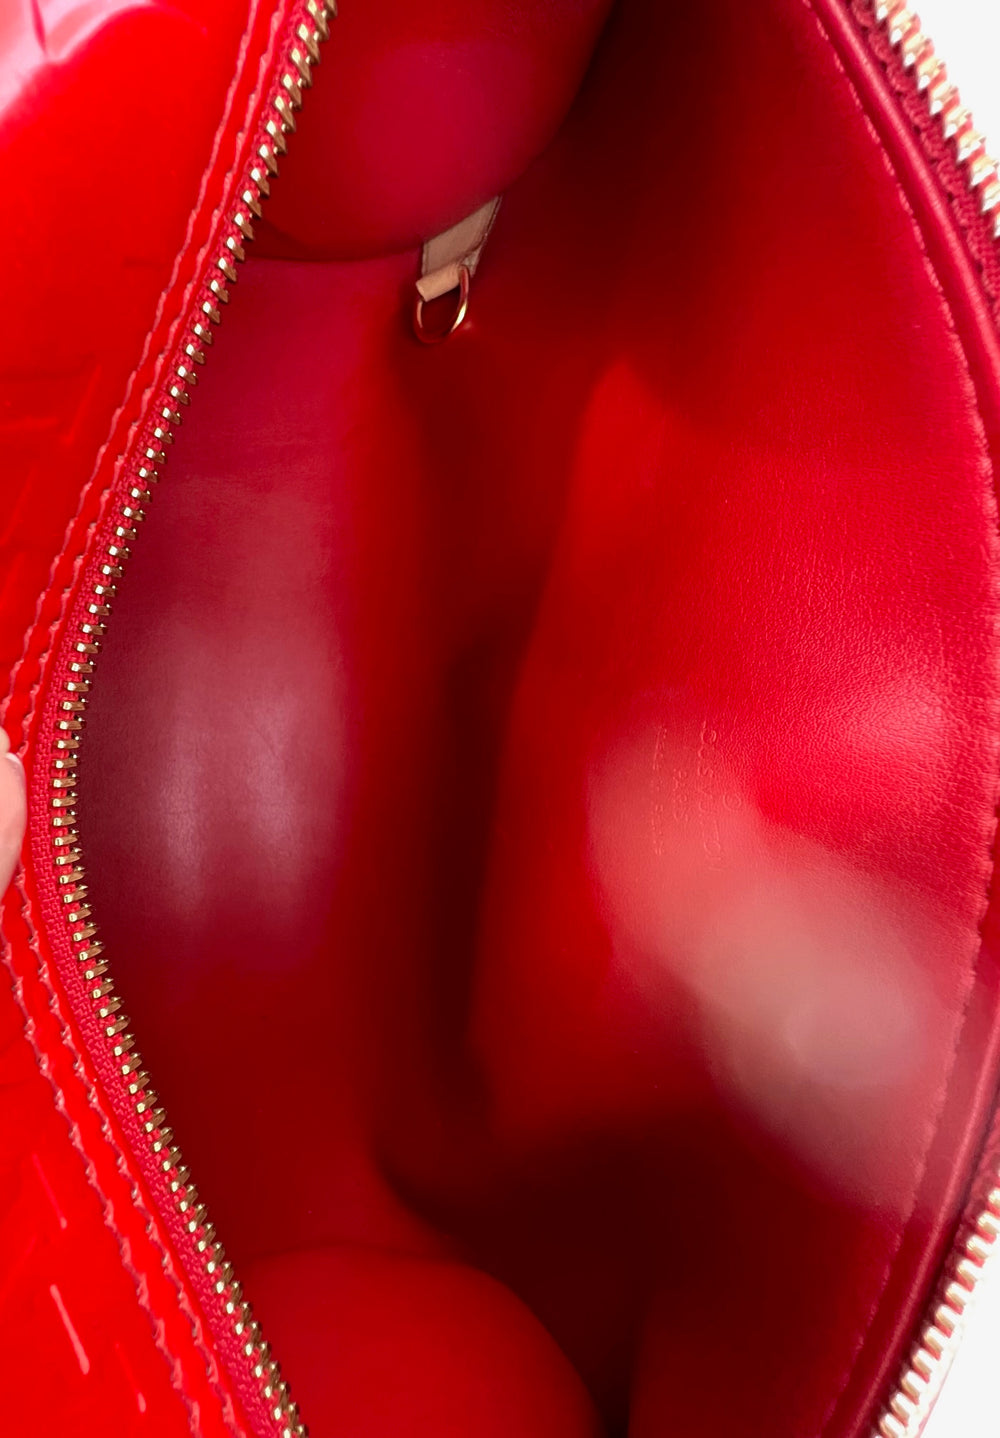 LOUIS VUITTON Handbag Papillon 30 Red Vernis Leather Vintage